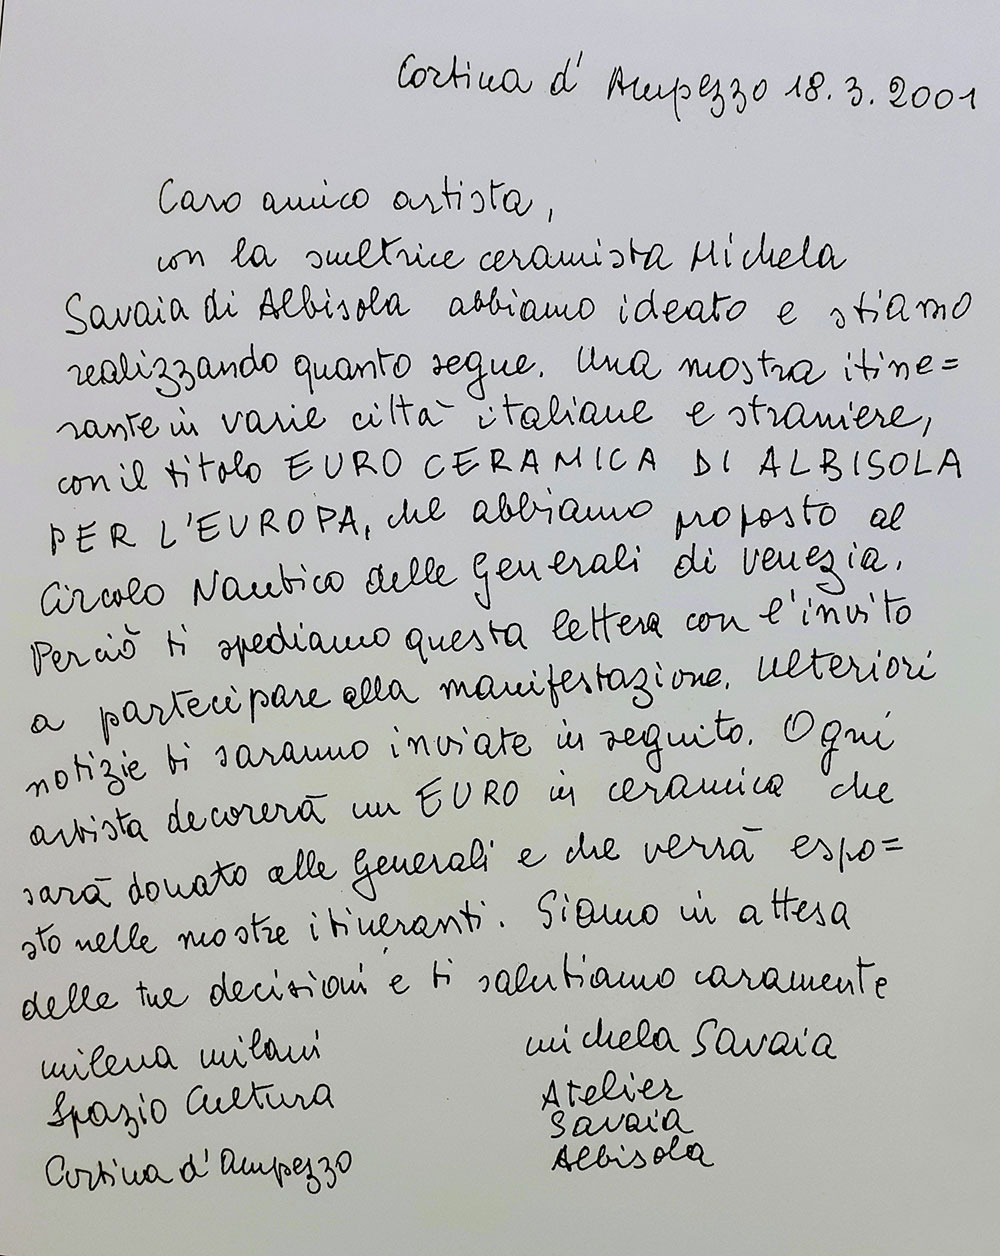 Milena Milani, Lettera di invito agli artisti, 2001